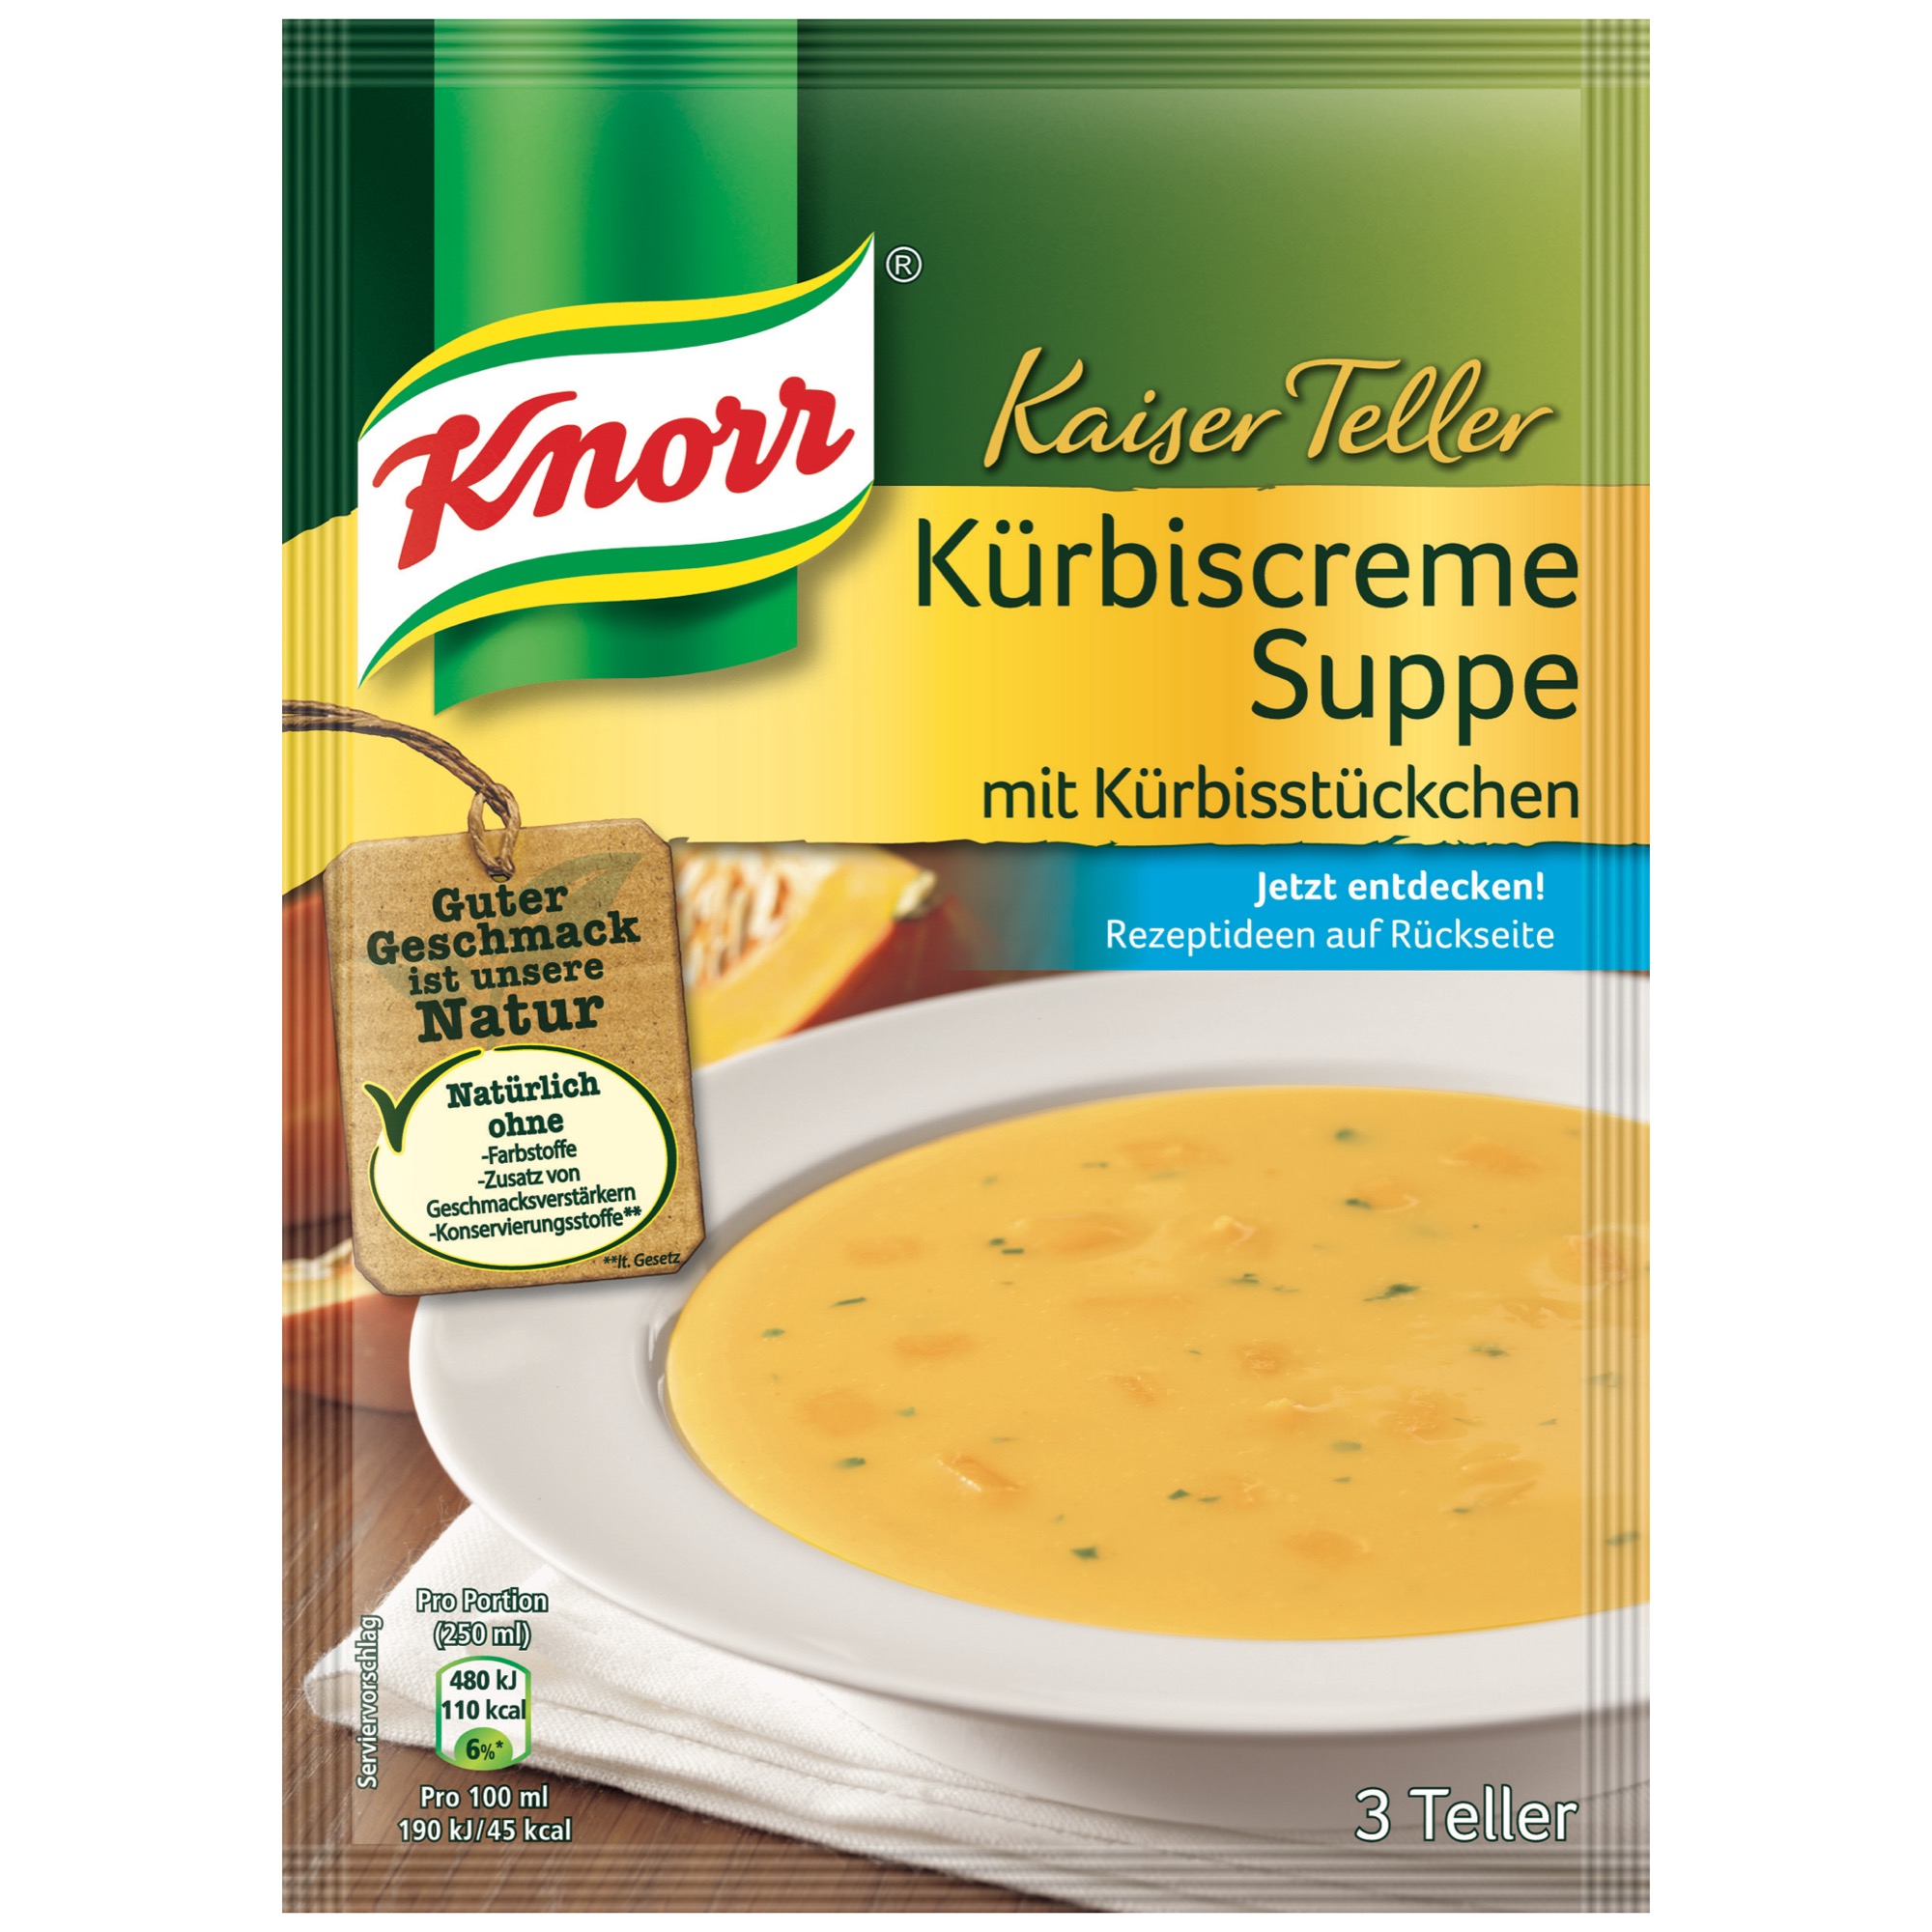 Knorr Kaiser polievka, tekvicová krémová